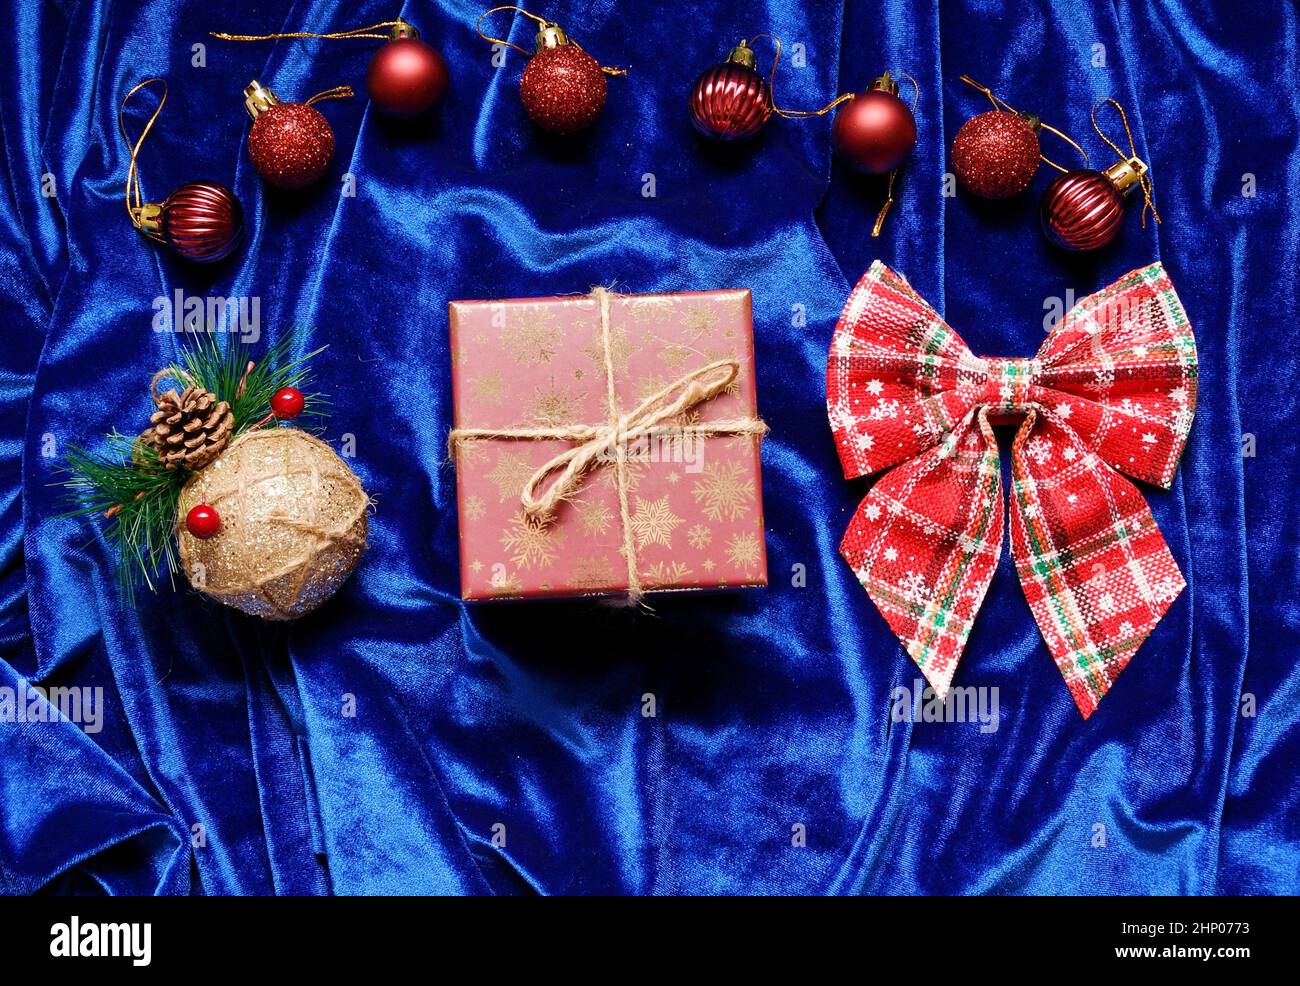 Décorations de Noël et cadeau sur fond bleu Banque D'Images